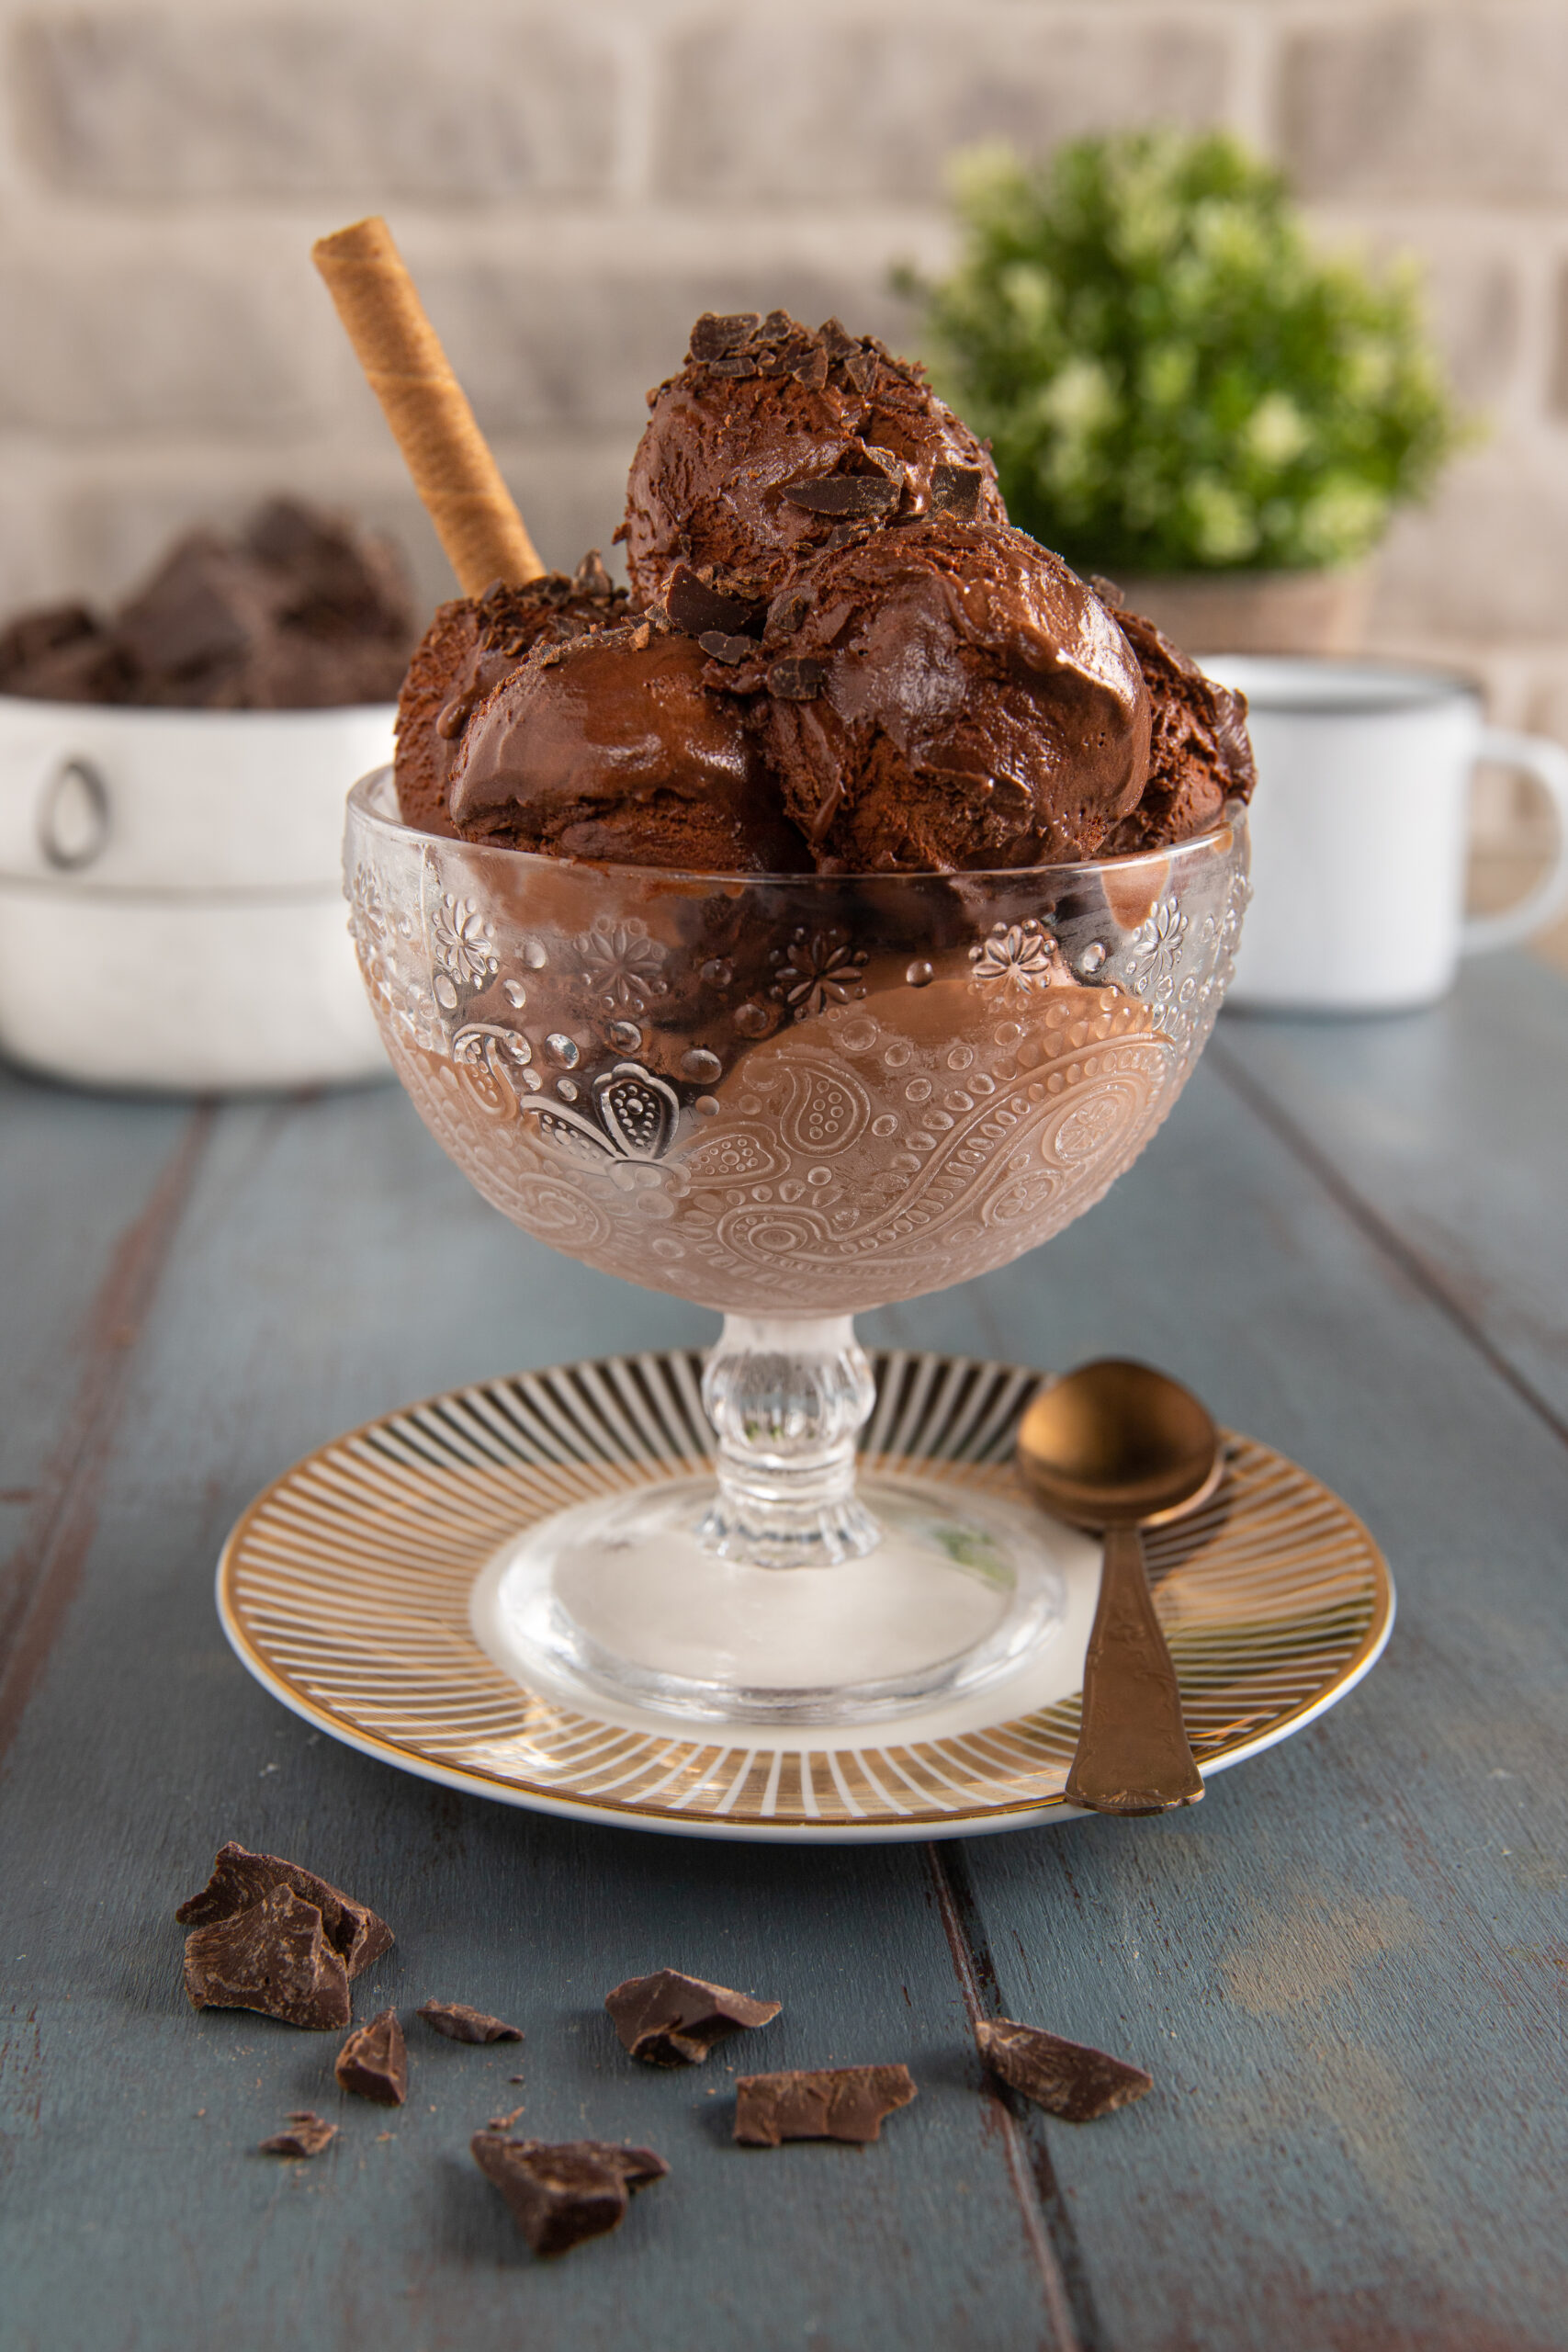 coppa con gelato al cioccolato